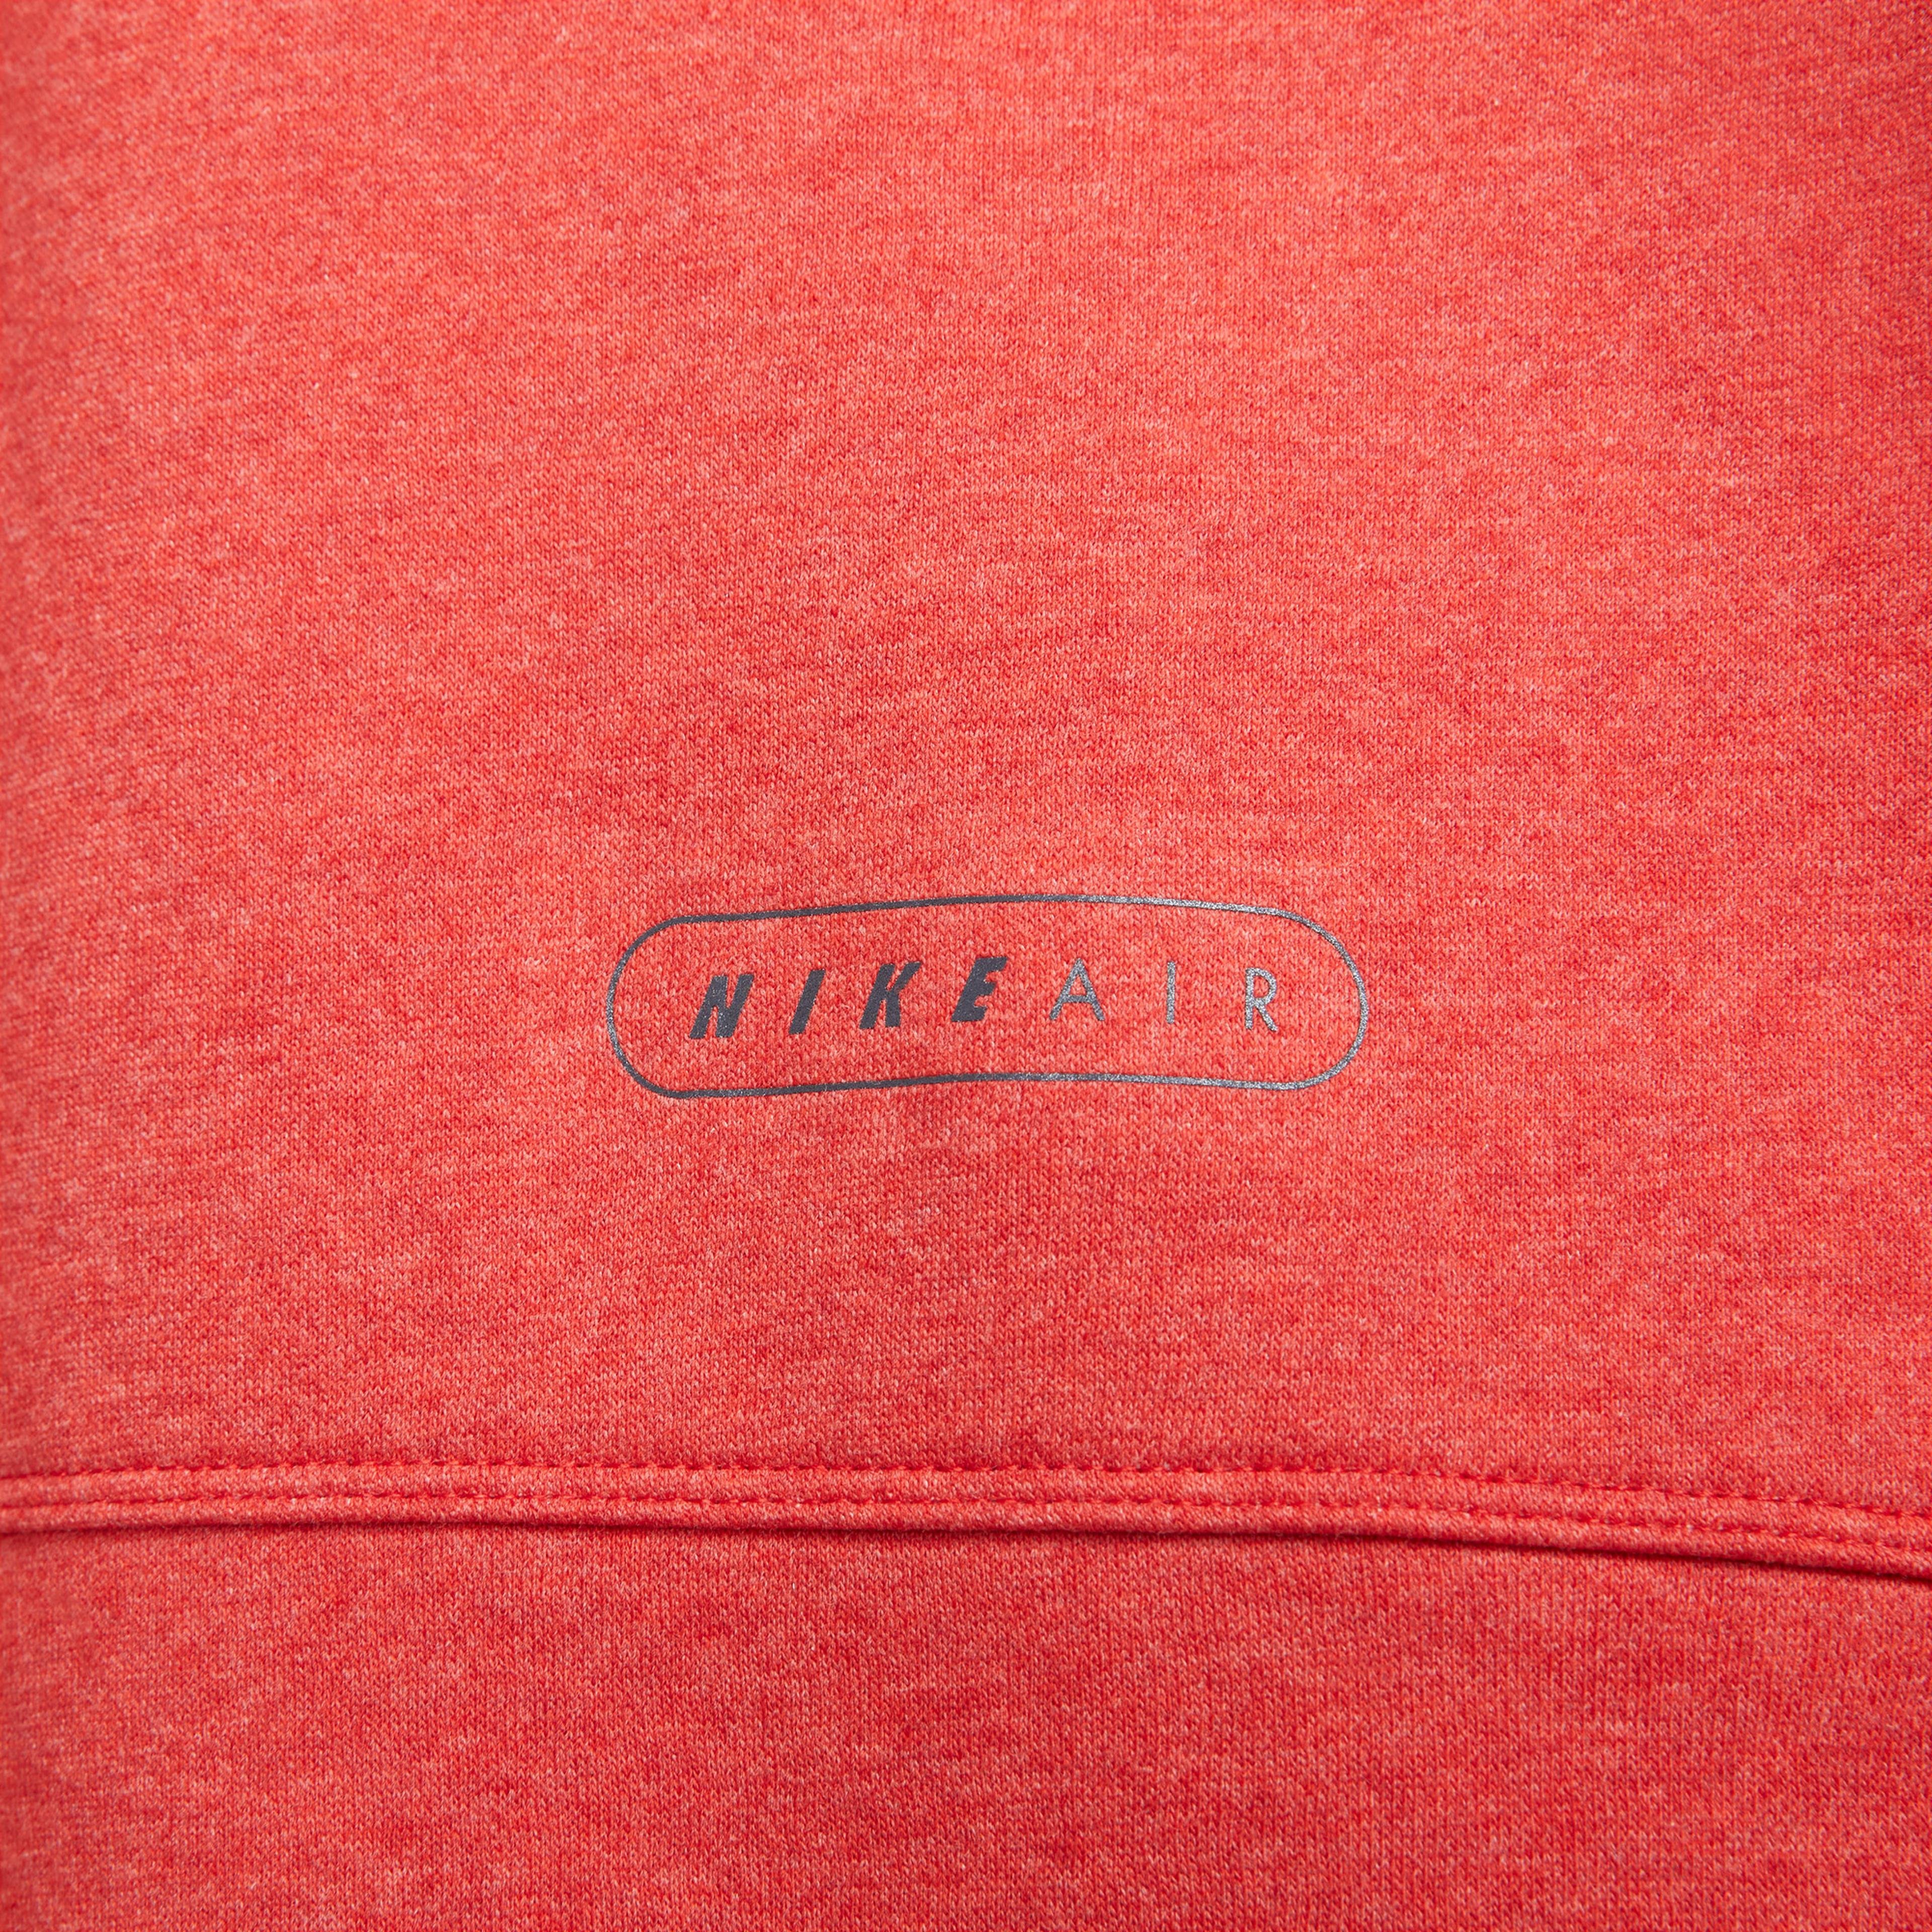 Nike Air Erkek Kırmızı Hoodie